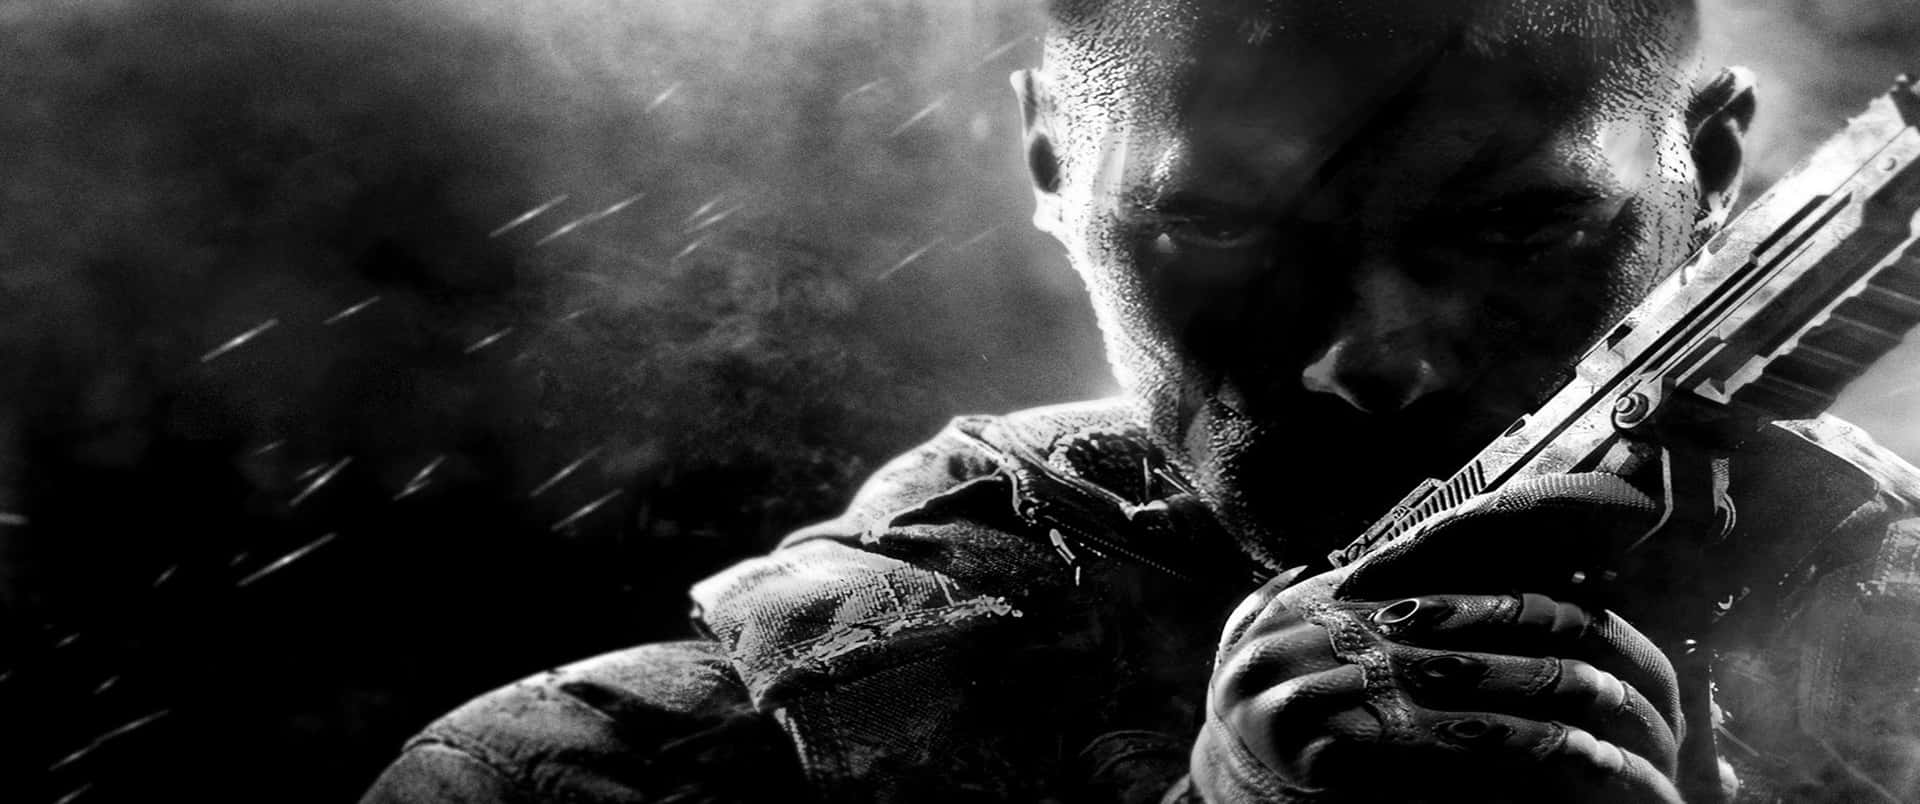 3440x1440phintergrund Für Call Of Duty Black Ops Cold War In Monochromer Farbgebung.